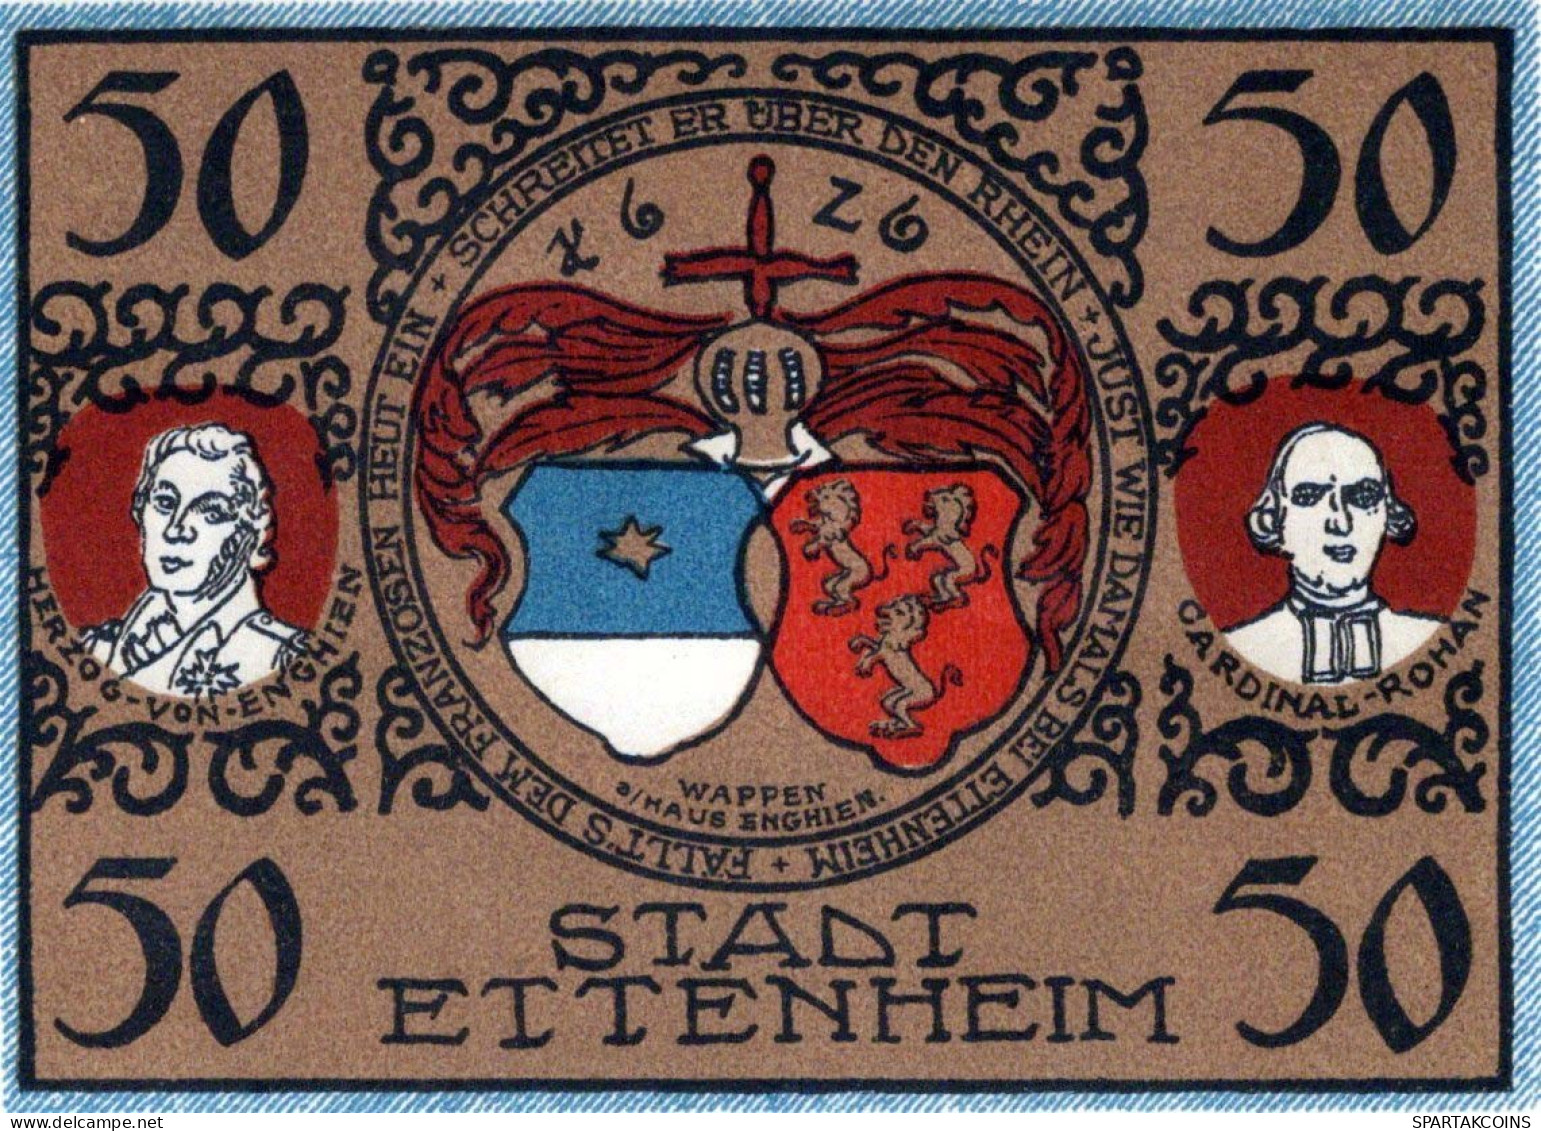 50 PFENNIG 1921 Stadt ETTENHEIM Baden UNC DEUTSCHLAND Notgeld Banknote #PB357 - [11] Local Banknote Issues